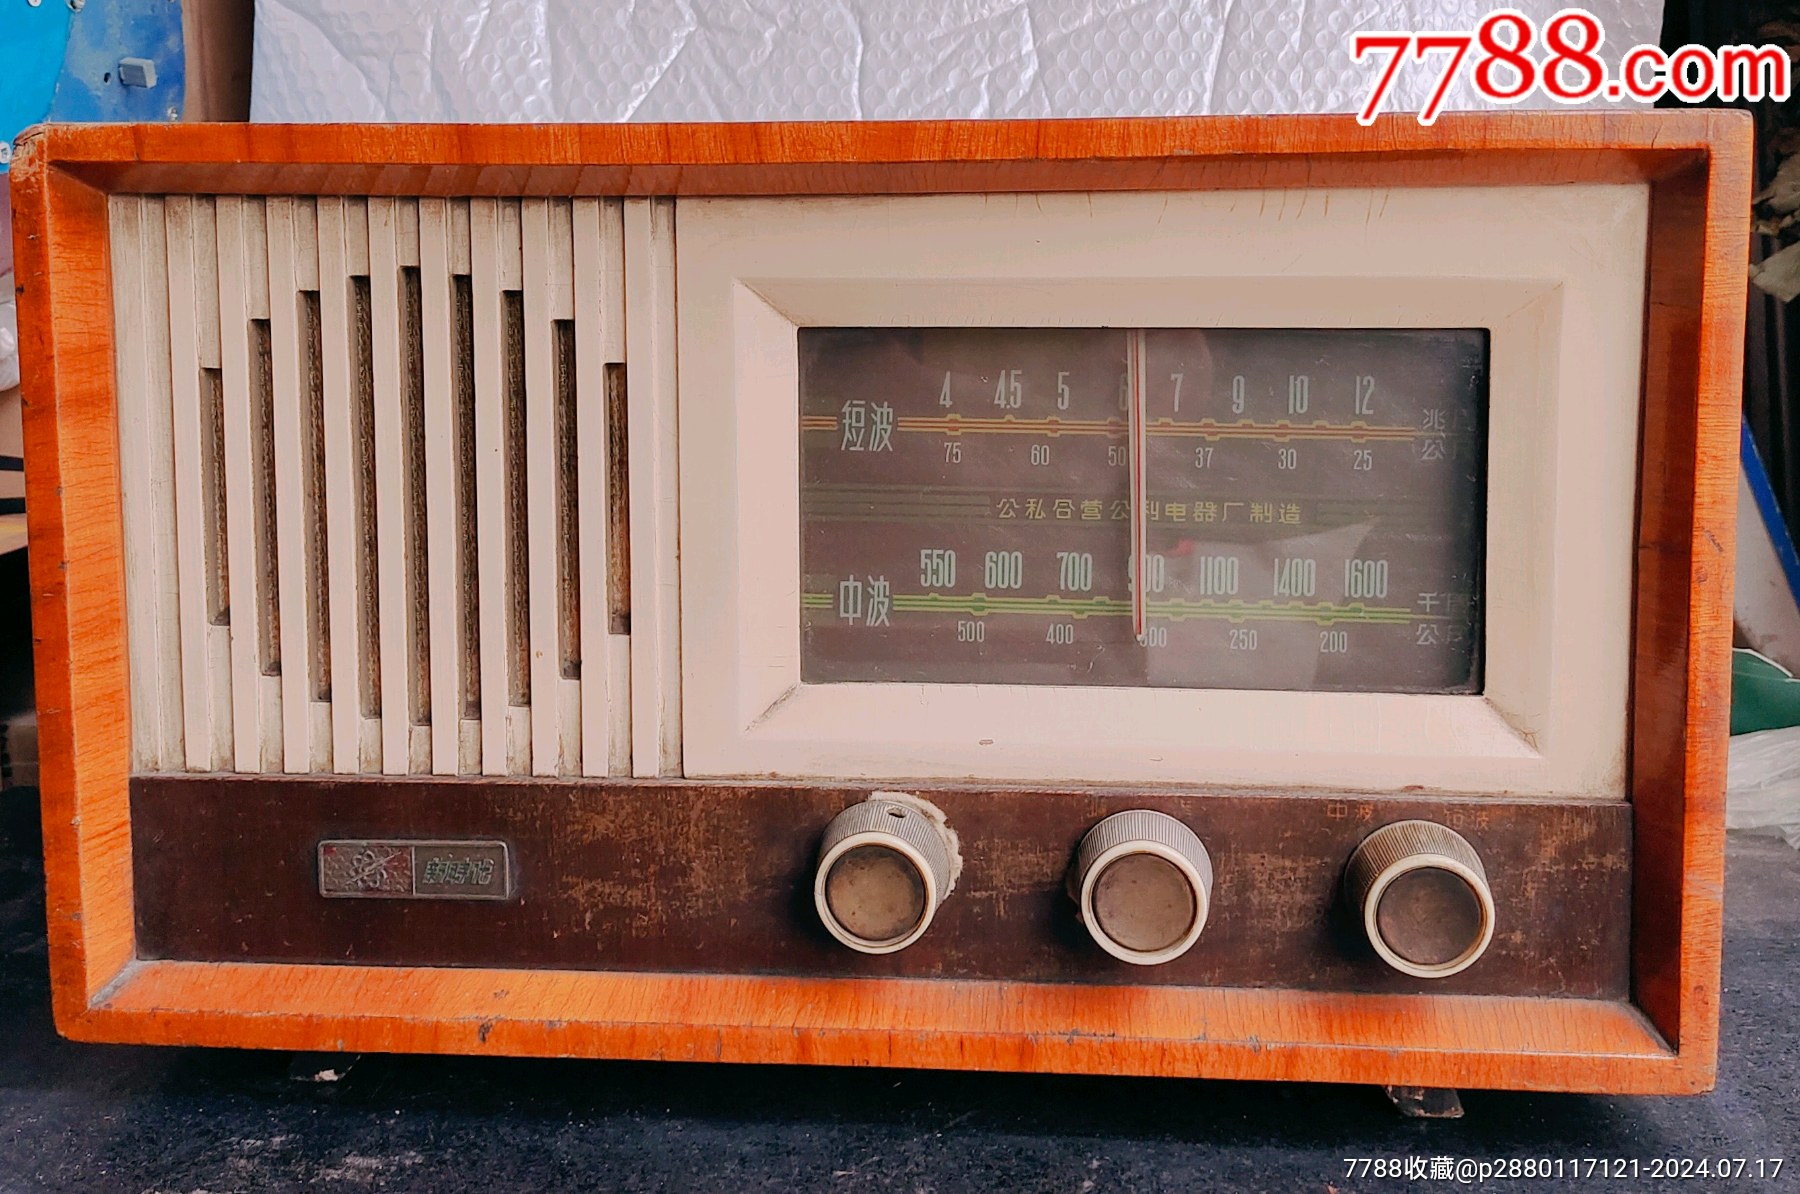 新时代电子管收音机上海公私合营公利电器厂品相完美收藏品